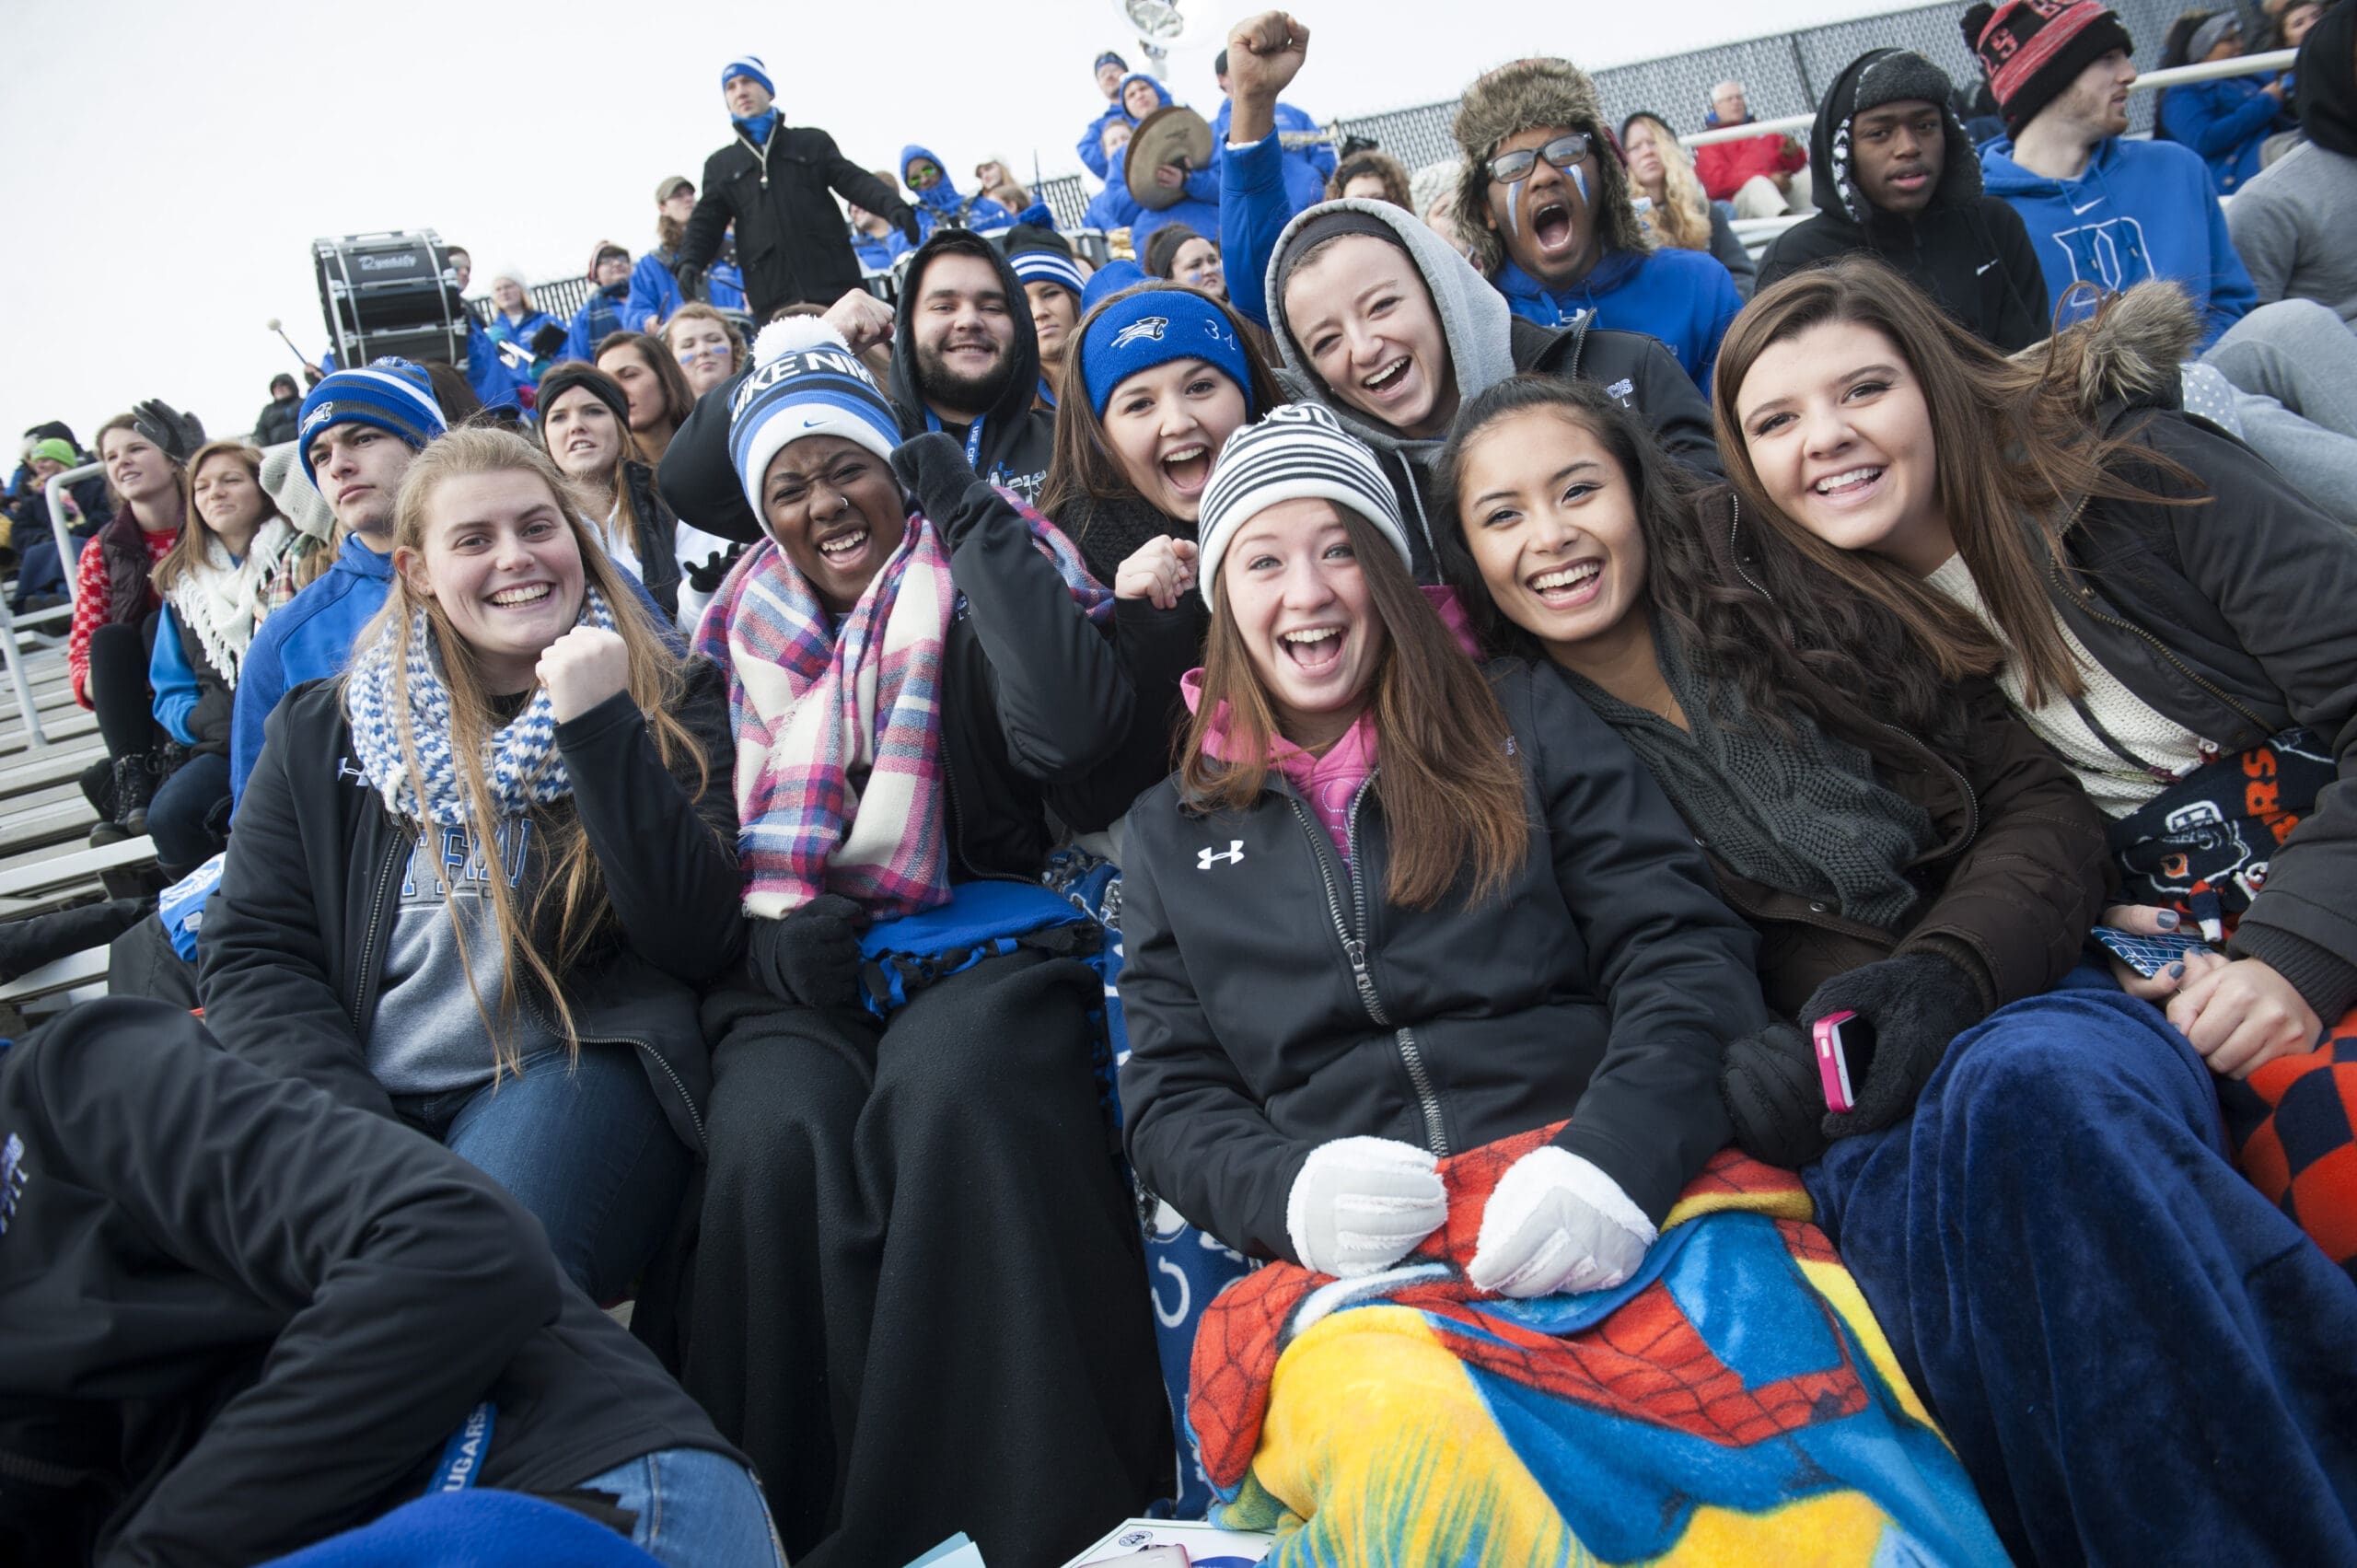 Students cheering at a Cougar Football game